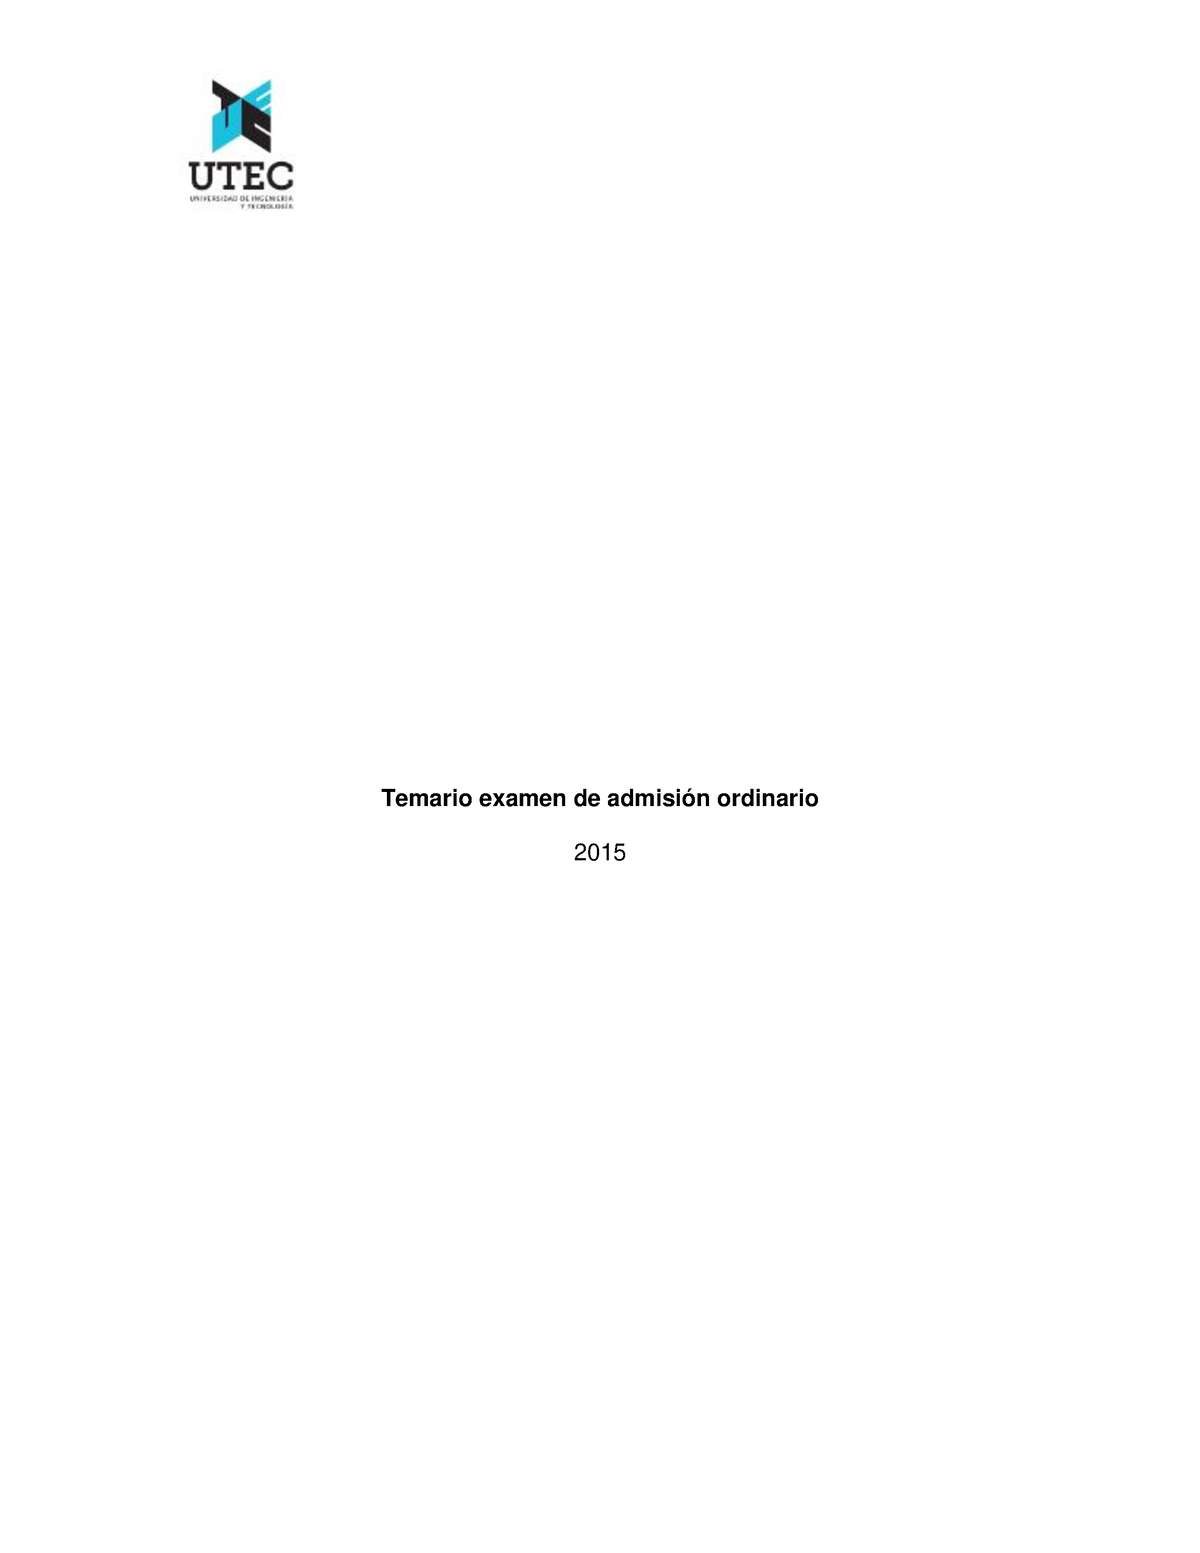 Temario De Admisión Utec Temario Examen De Admisión Ordinario 2015 Razonamiento Matemático 5015